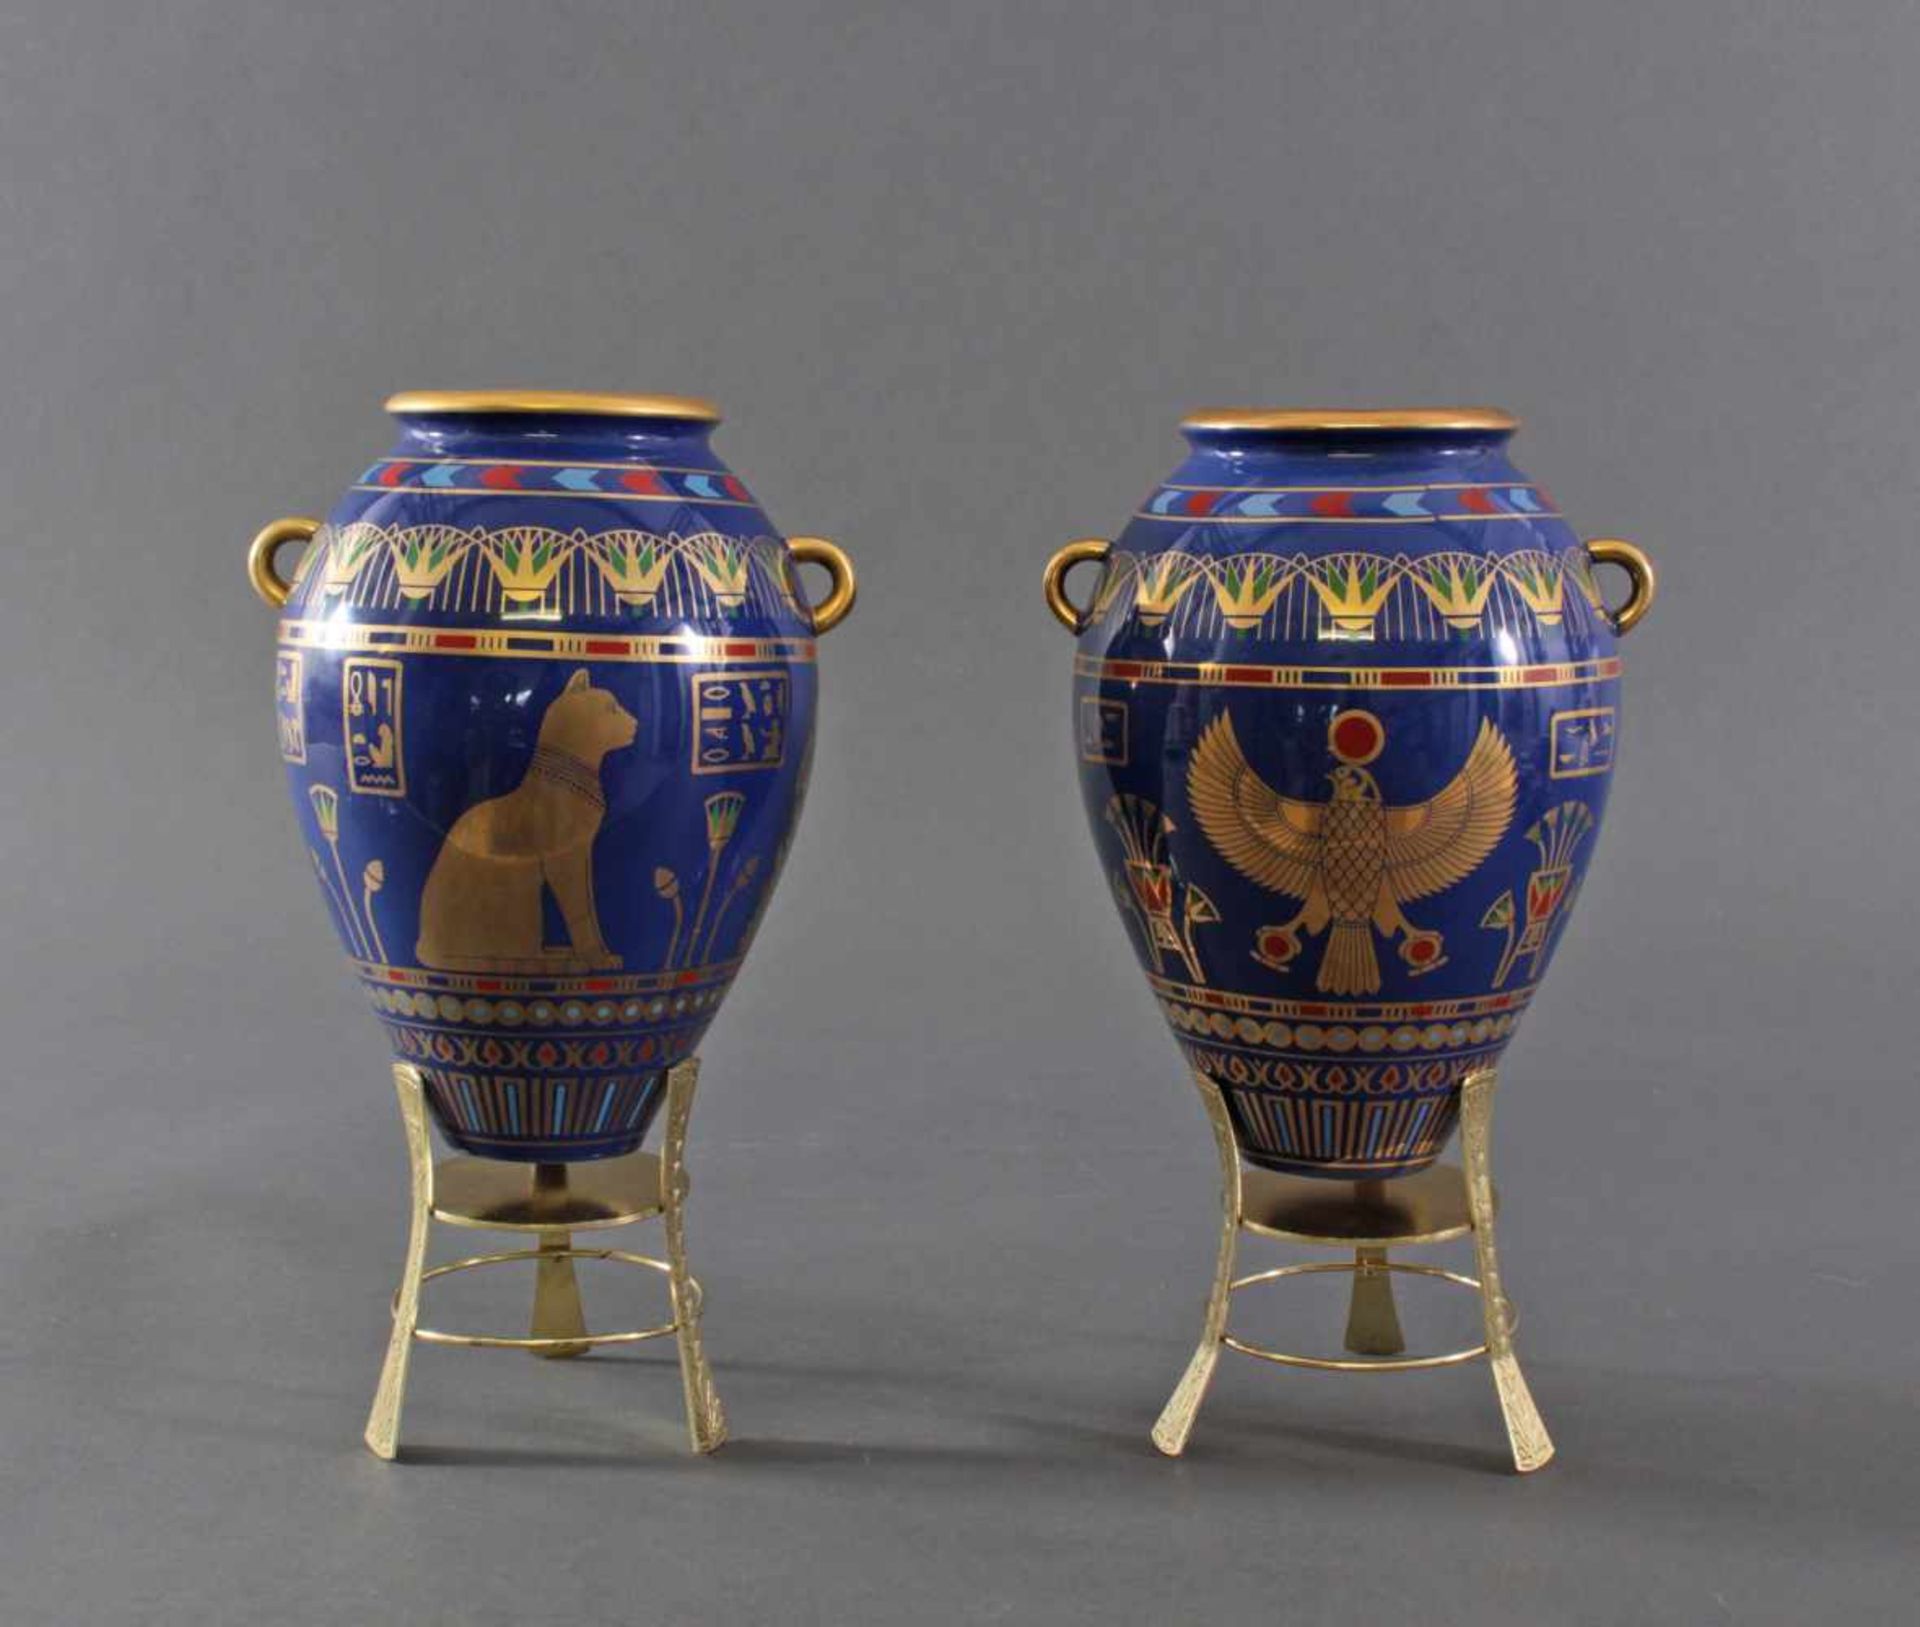 Paar Bastet Vasen von Roushdy Iskander Garas, Franklin Mint 19872 Porzellanvasen in